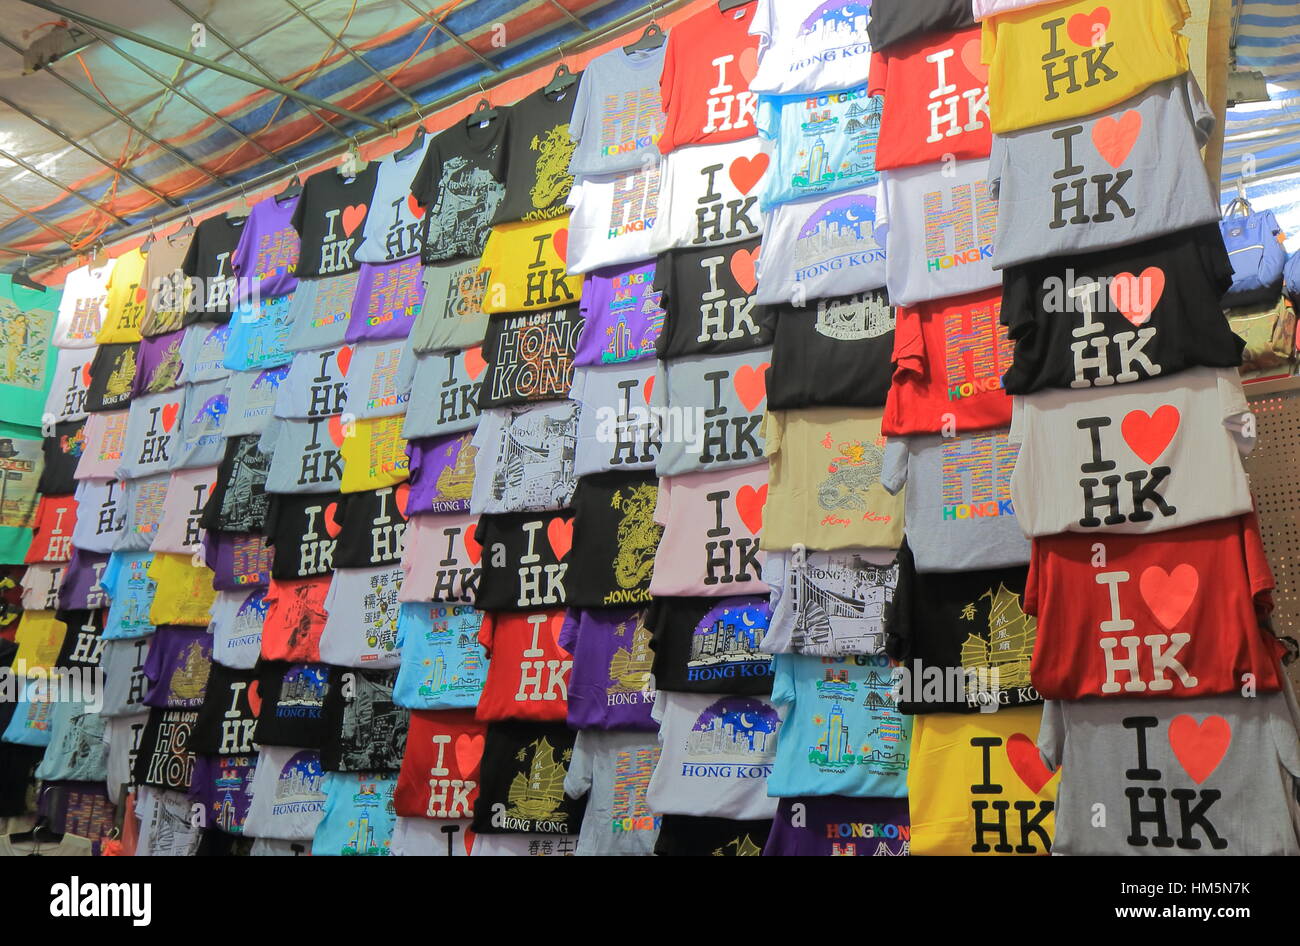 T shirt shop at Ladies market in Mong Kok in Hong Kong. Stock Photo